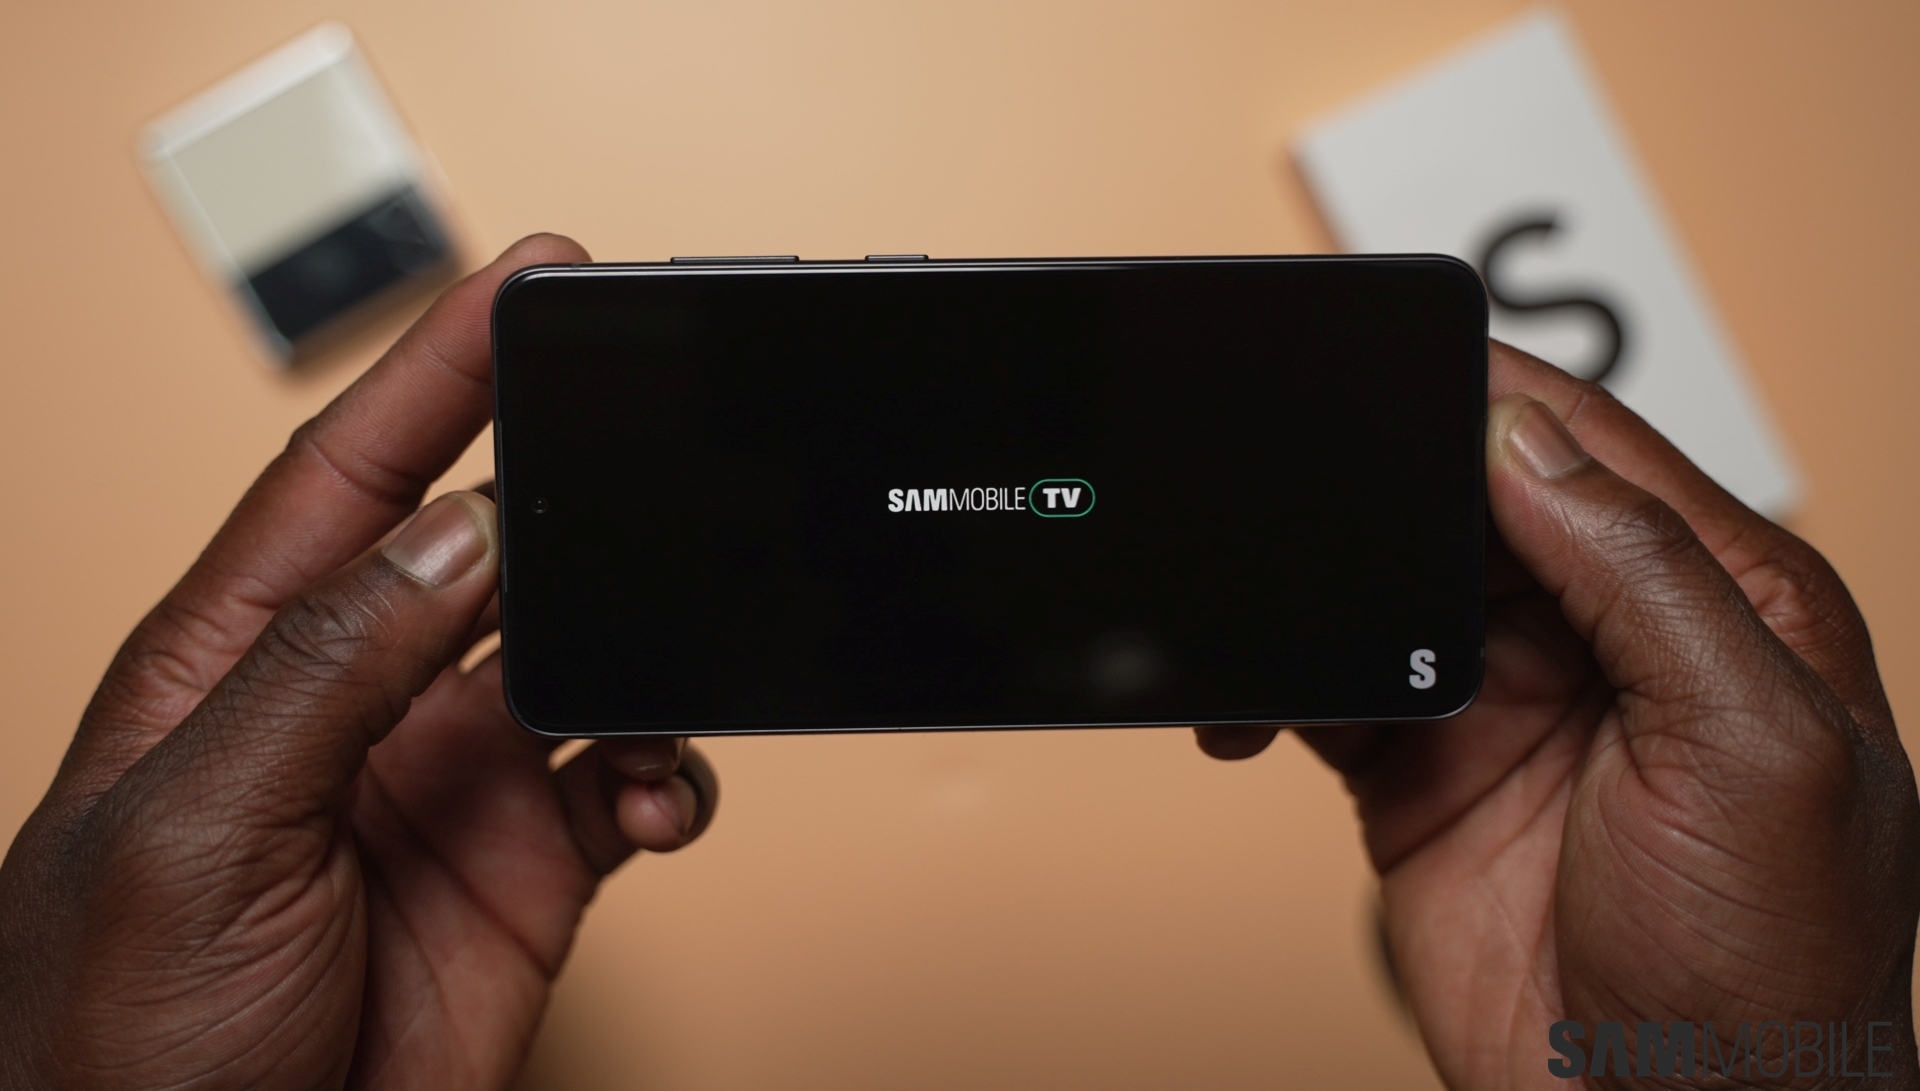 Samsung Galaxy S21 FE (Fan Edition) - SamMobile